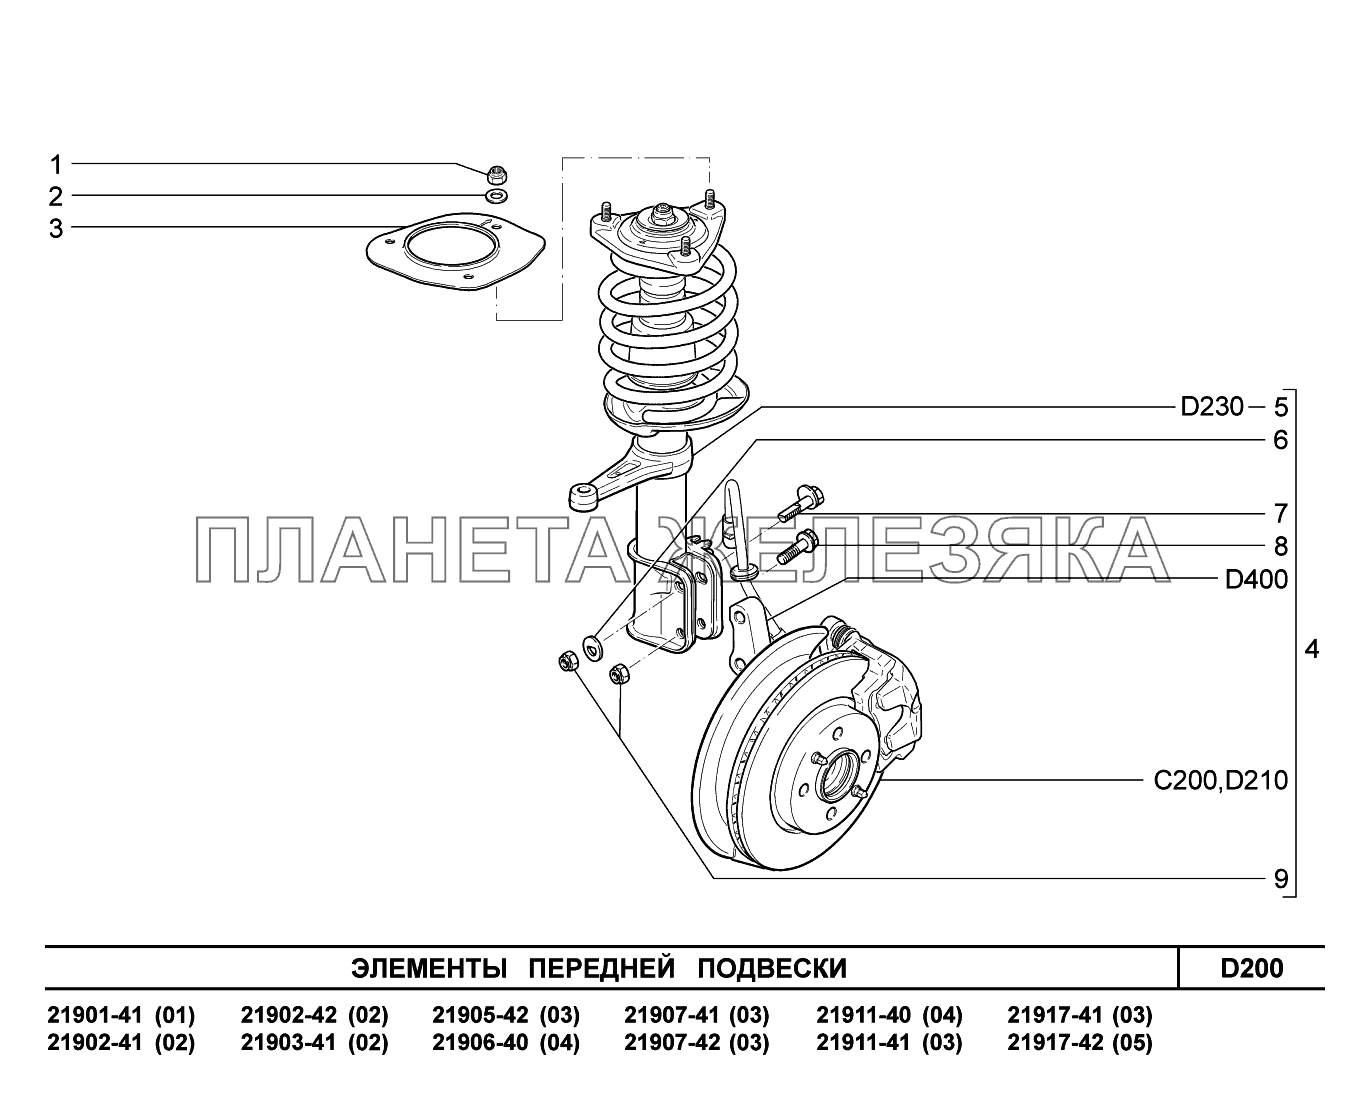 D200. Элементы передней подвески Lada Granta-2190